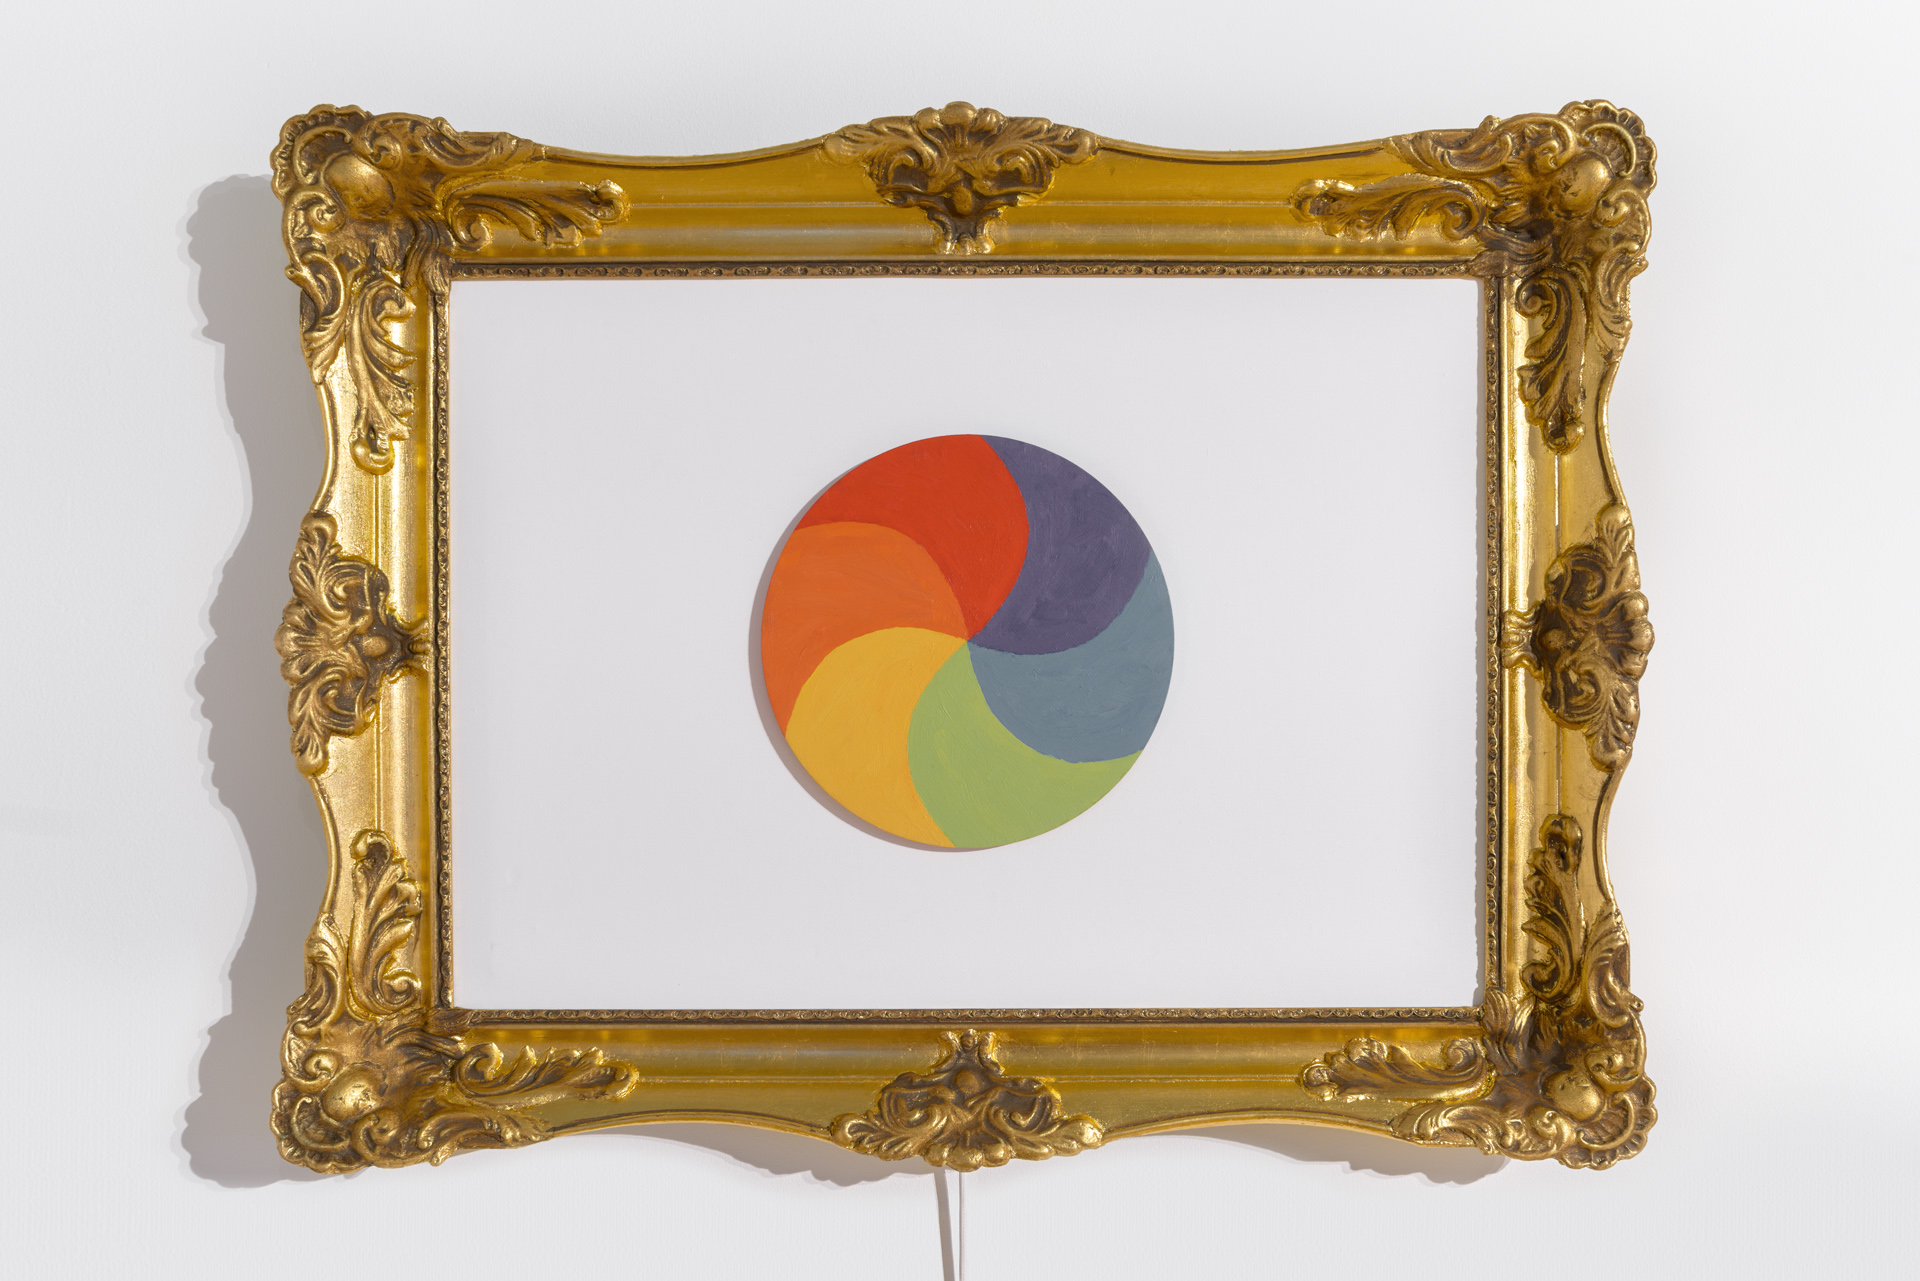 Złota, bardzo bogato zdobiona rama obrazu, , wewnątrz białe tło. Na środku tła koło pomalowane w sześciu kolorach: ciemnoniebieskim, niebieskim, zielonym, żółtym, pomarańczowym i czerwonym. Fot Maciej Jędrzejewski